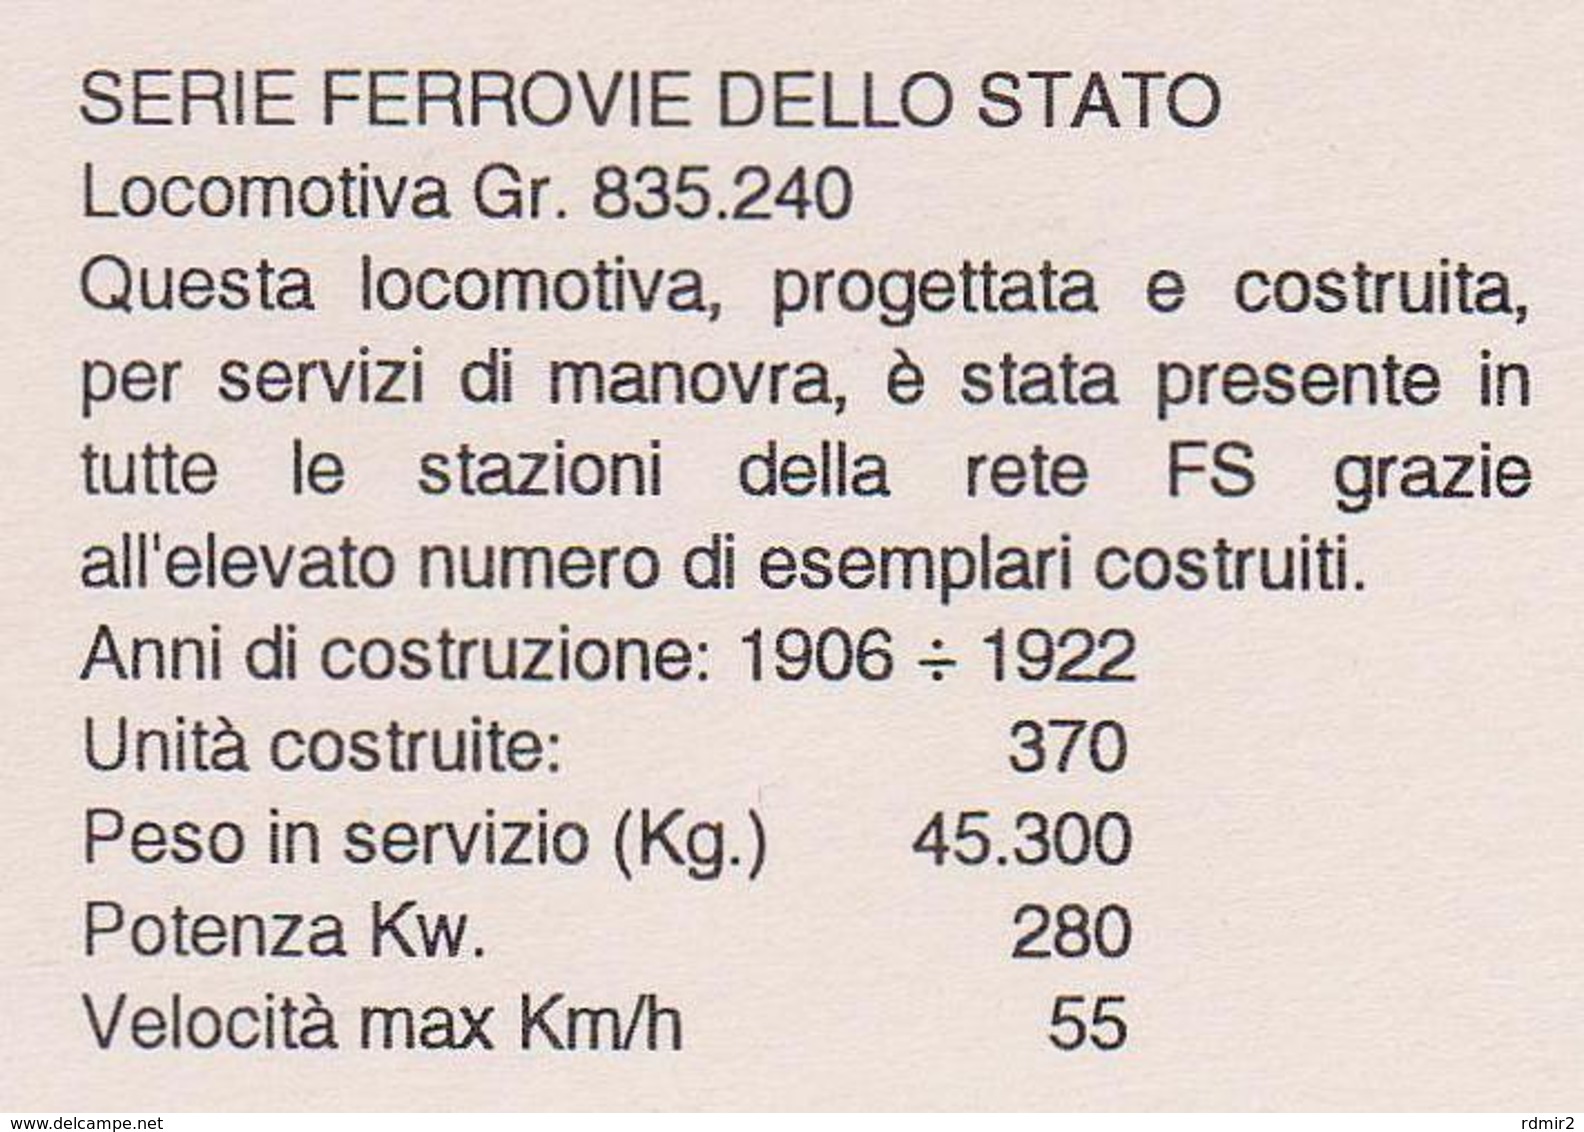 [875] FERROVIE DELLO STATO Italia / Italy. Locomotiva / Locomotive Gr. 835.240, 1906/1922. - Non Scritta. Non écrite. - Trenes